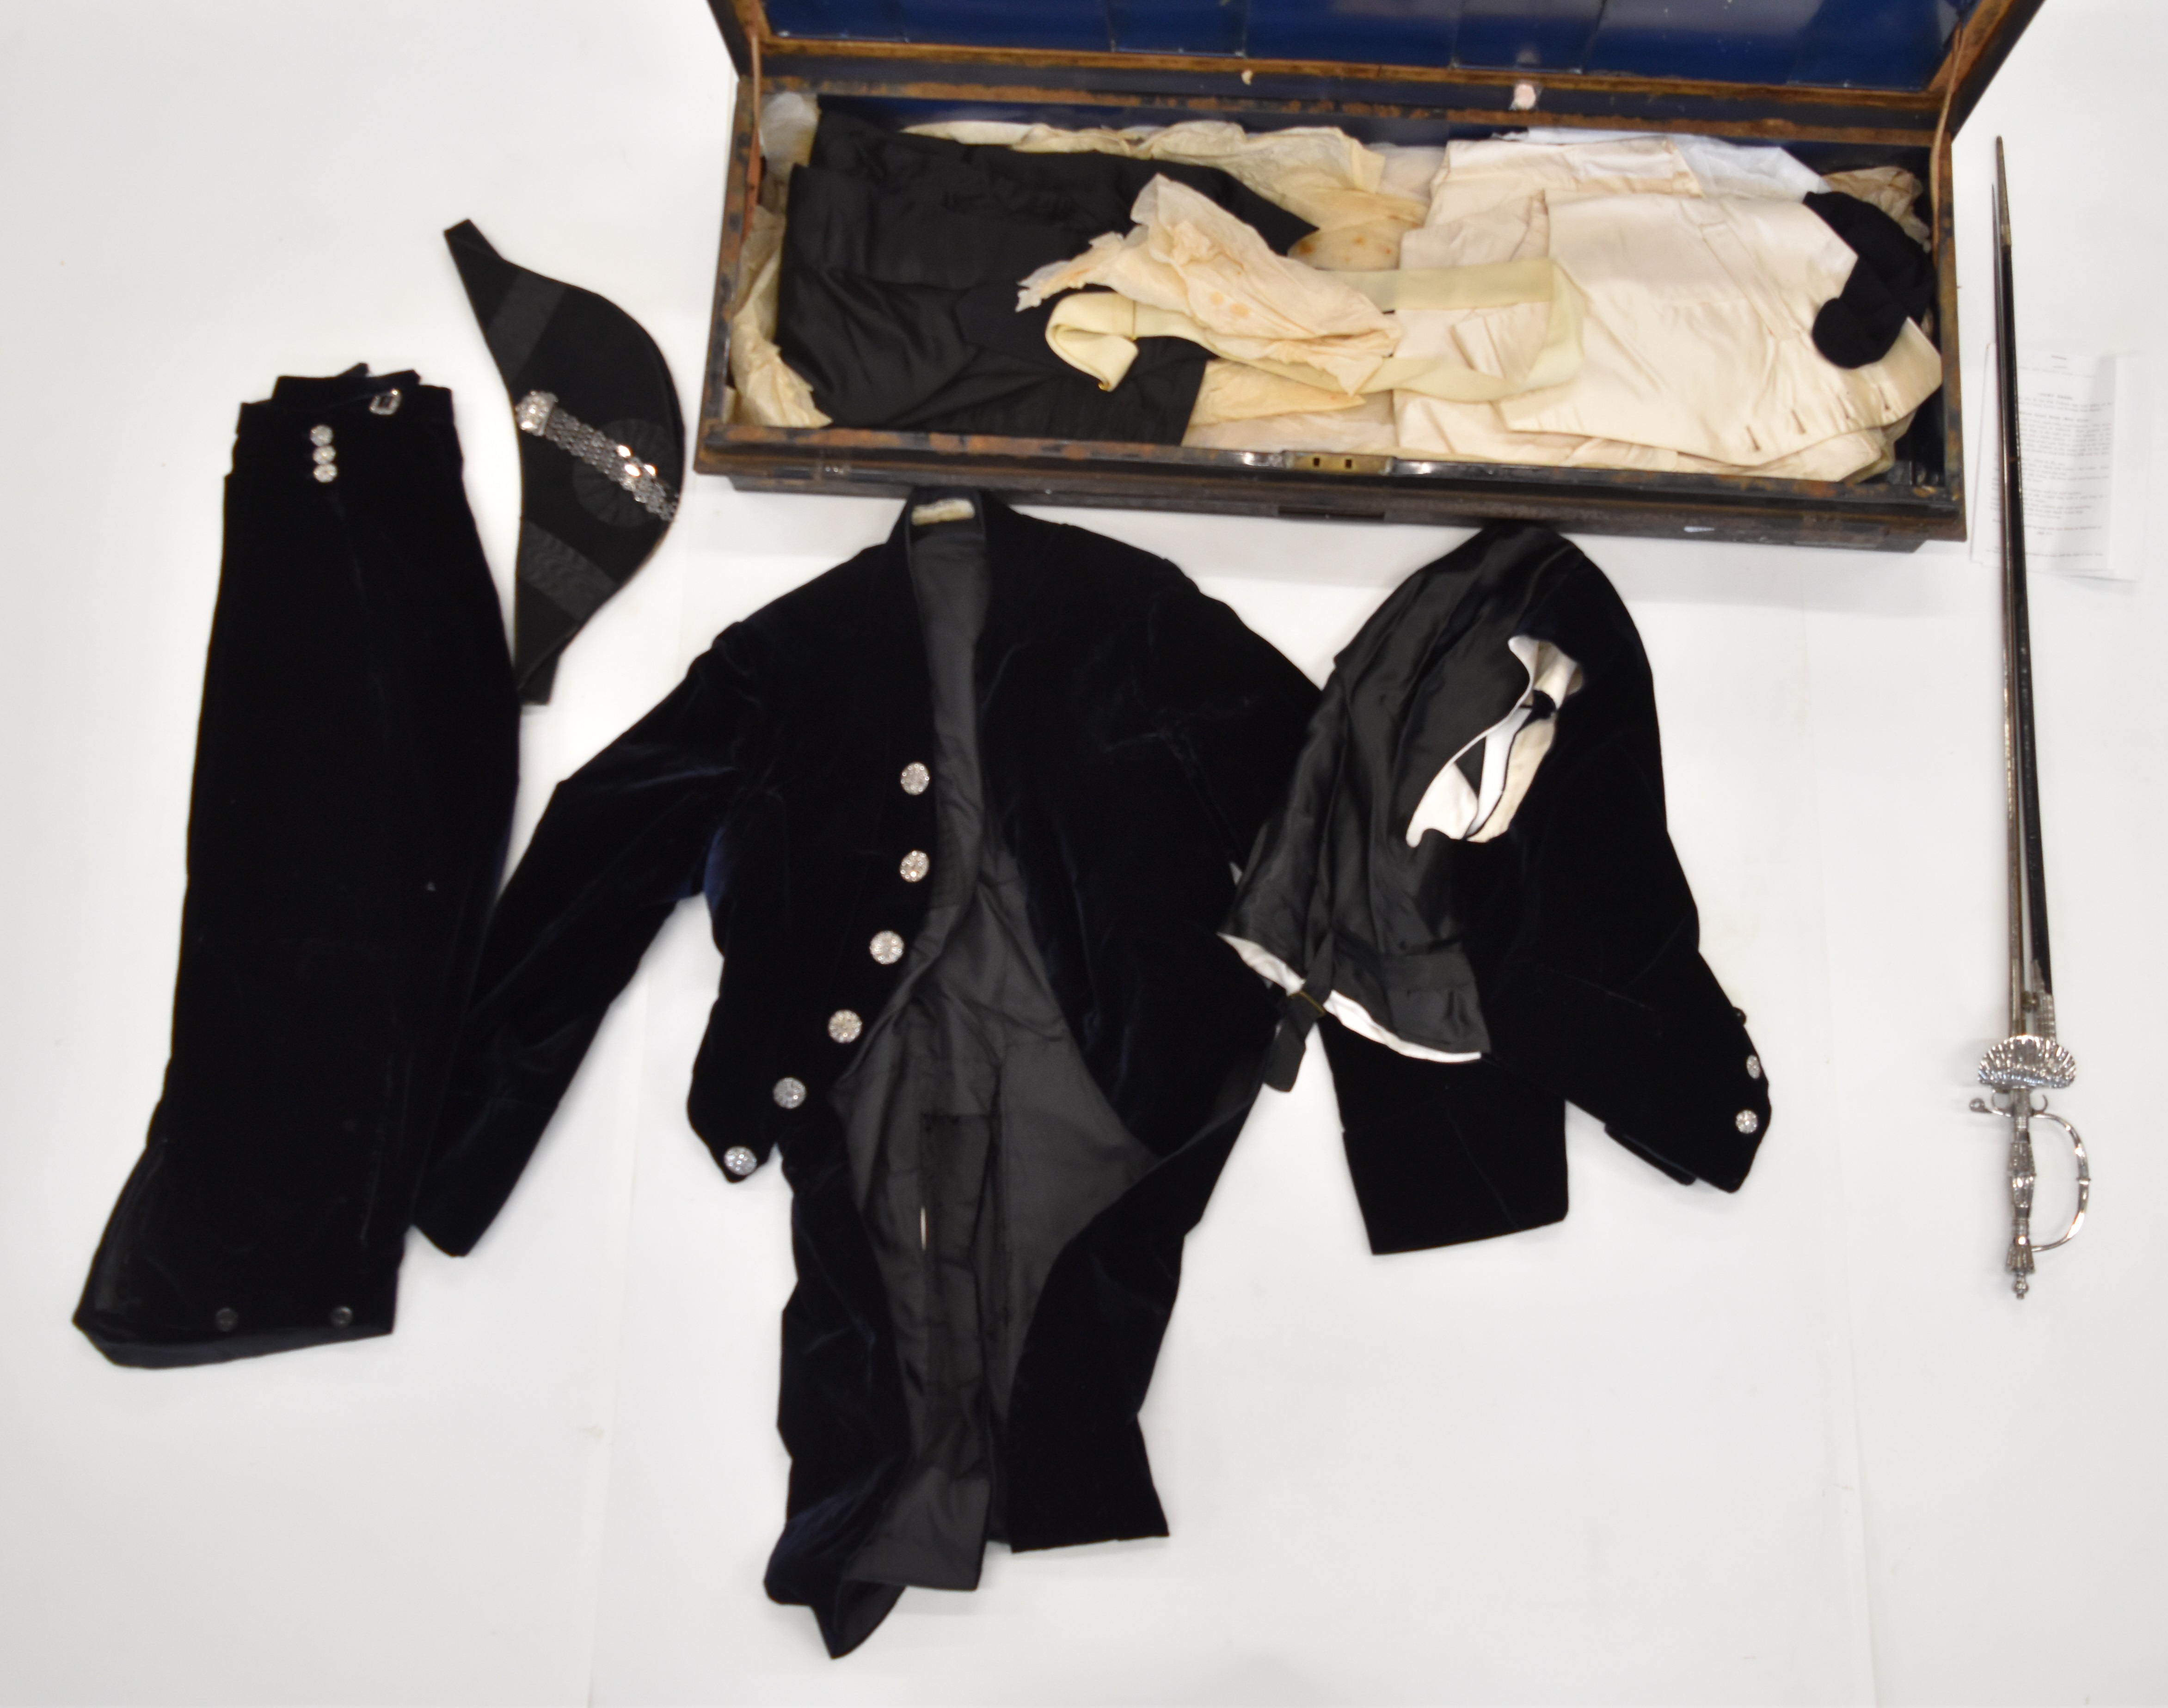 Early 20thC High Sheriff's uniform comprising black velvet coat, velvet breeches and waistcoat, - Image 2 of 20